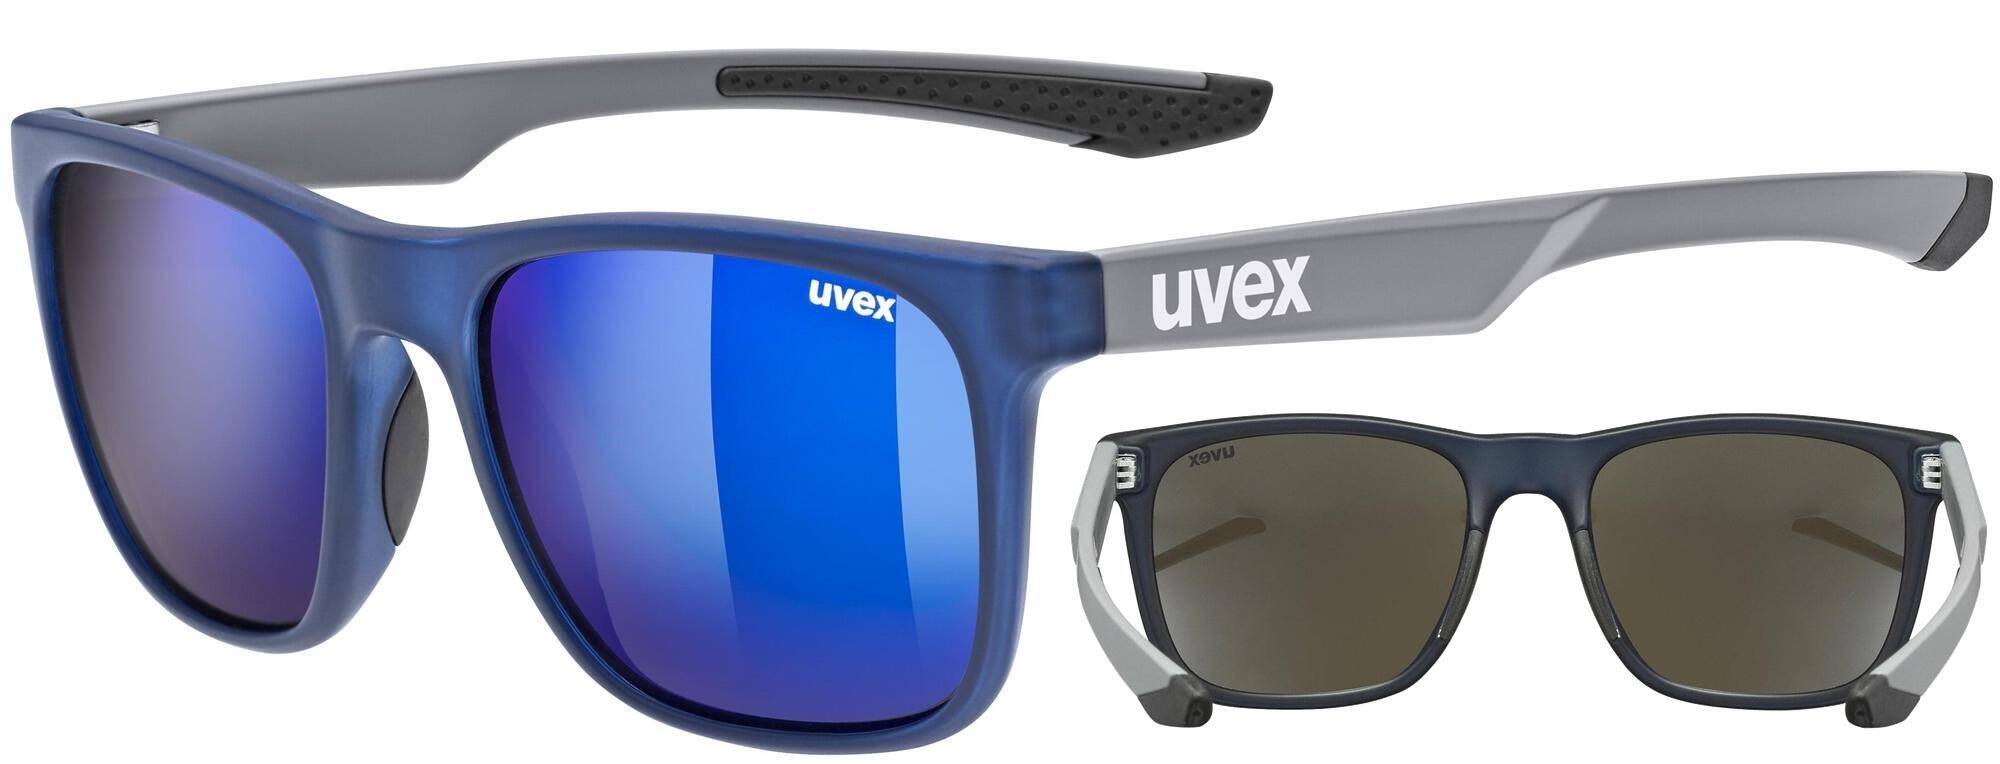 Okulary Uvex LGL 42 niebiesko-szare